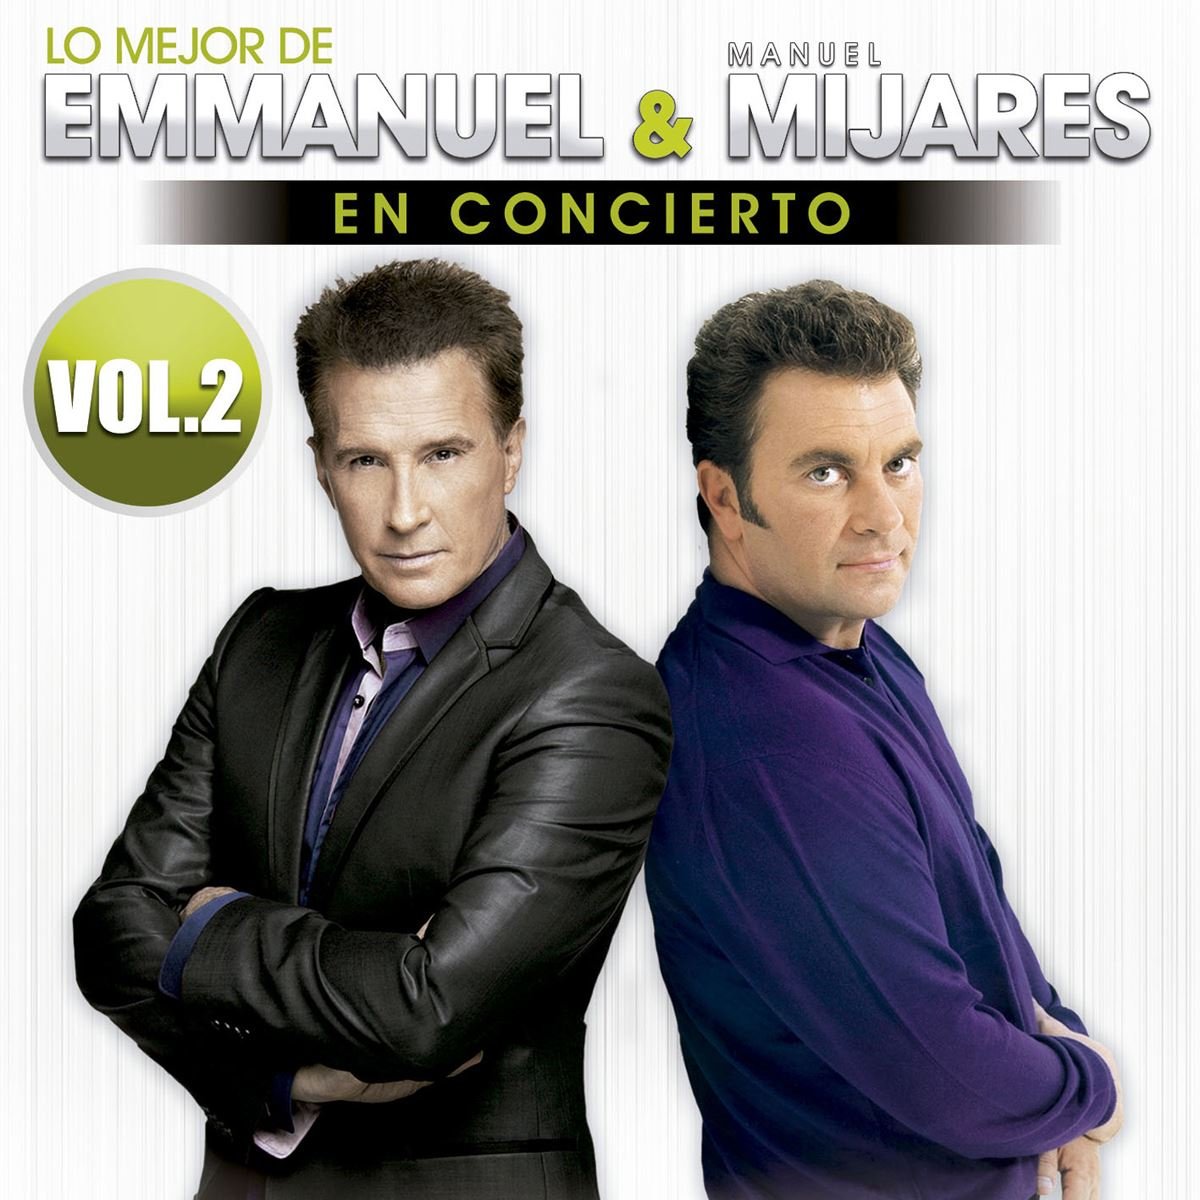 CD Lo Mejor de Emmanuel & Manuel Mijares En Concierto VOL.2